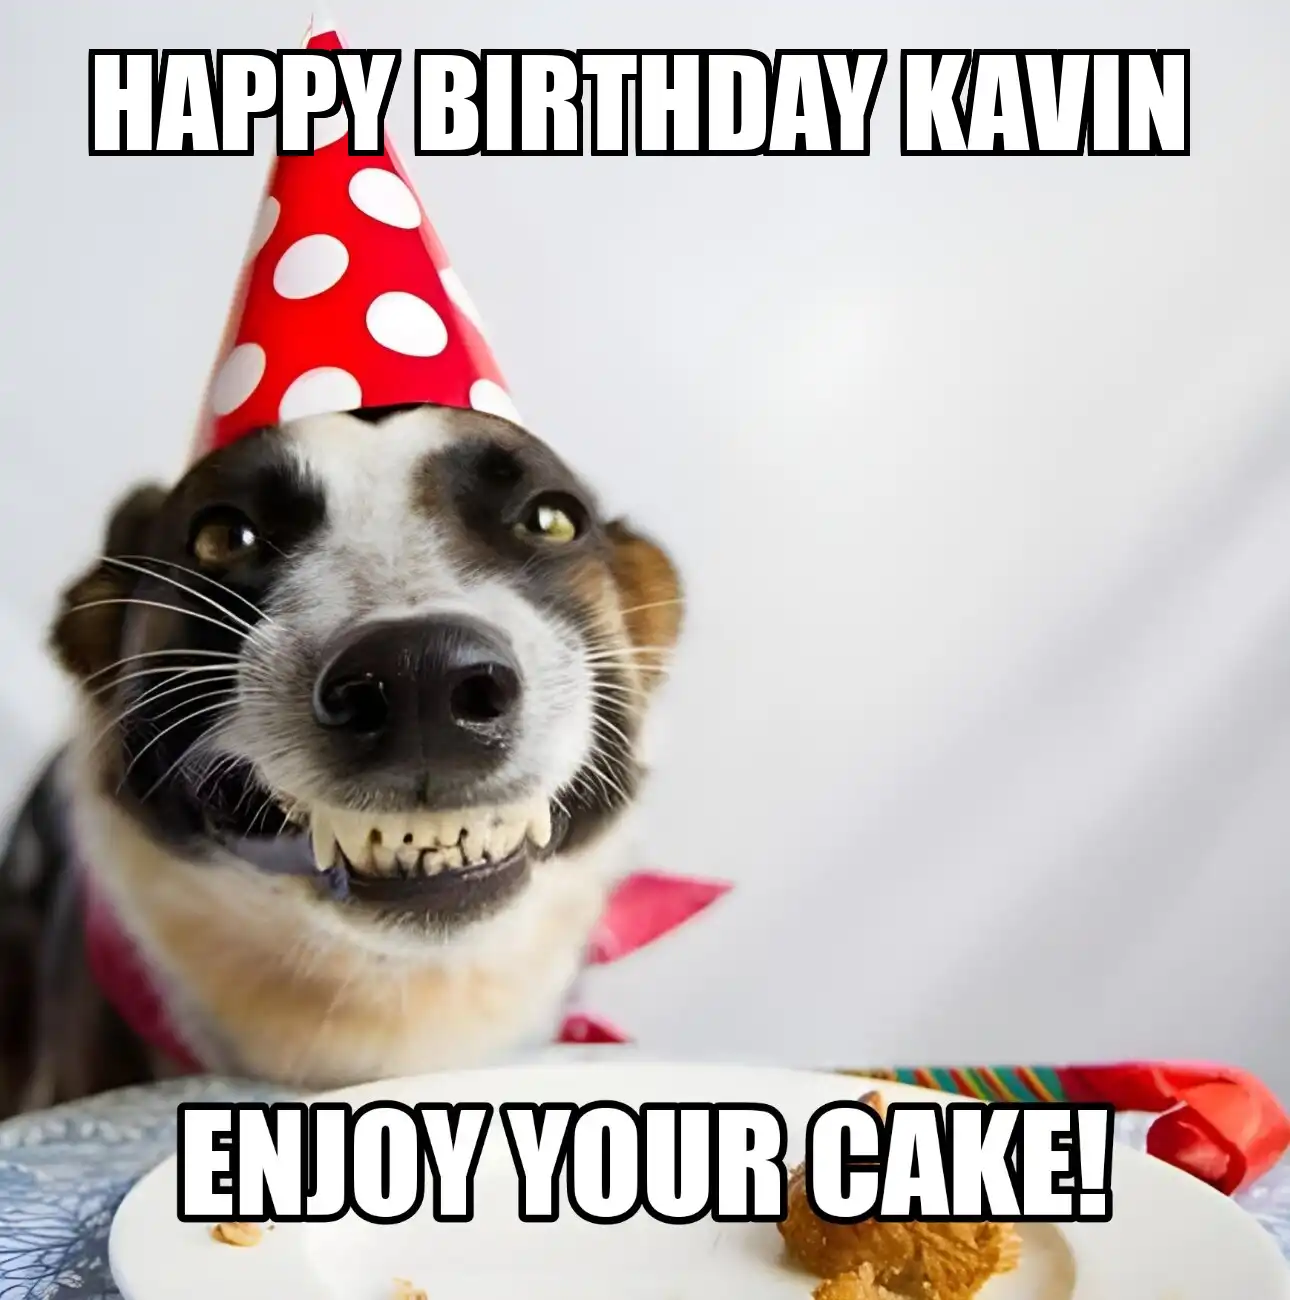 Happy Birthday Kavin Enjoy Your Cake Dog Meme